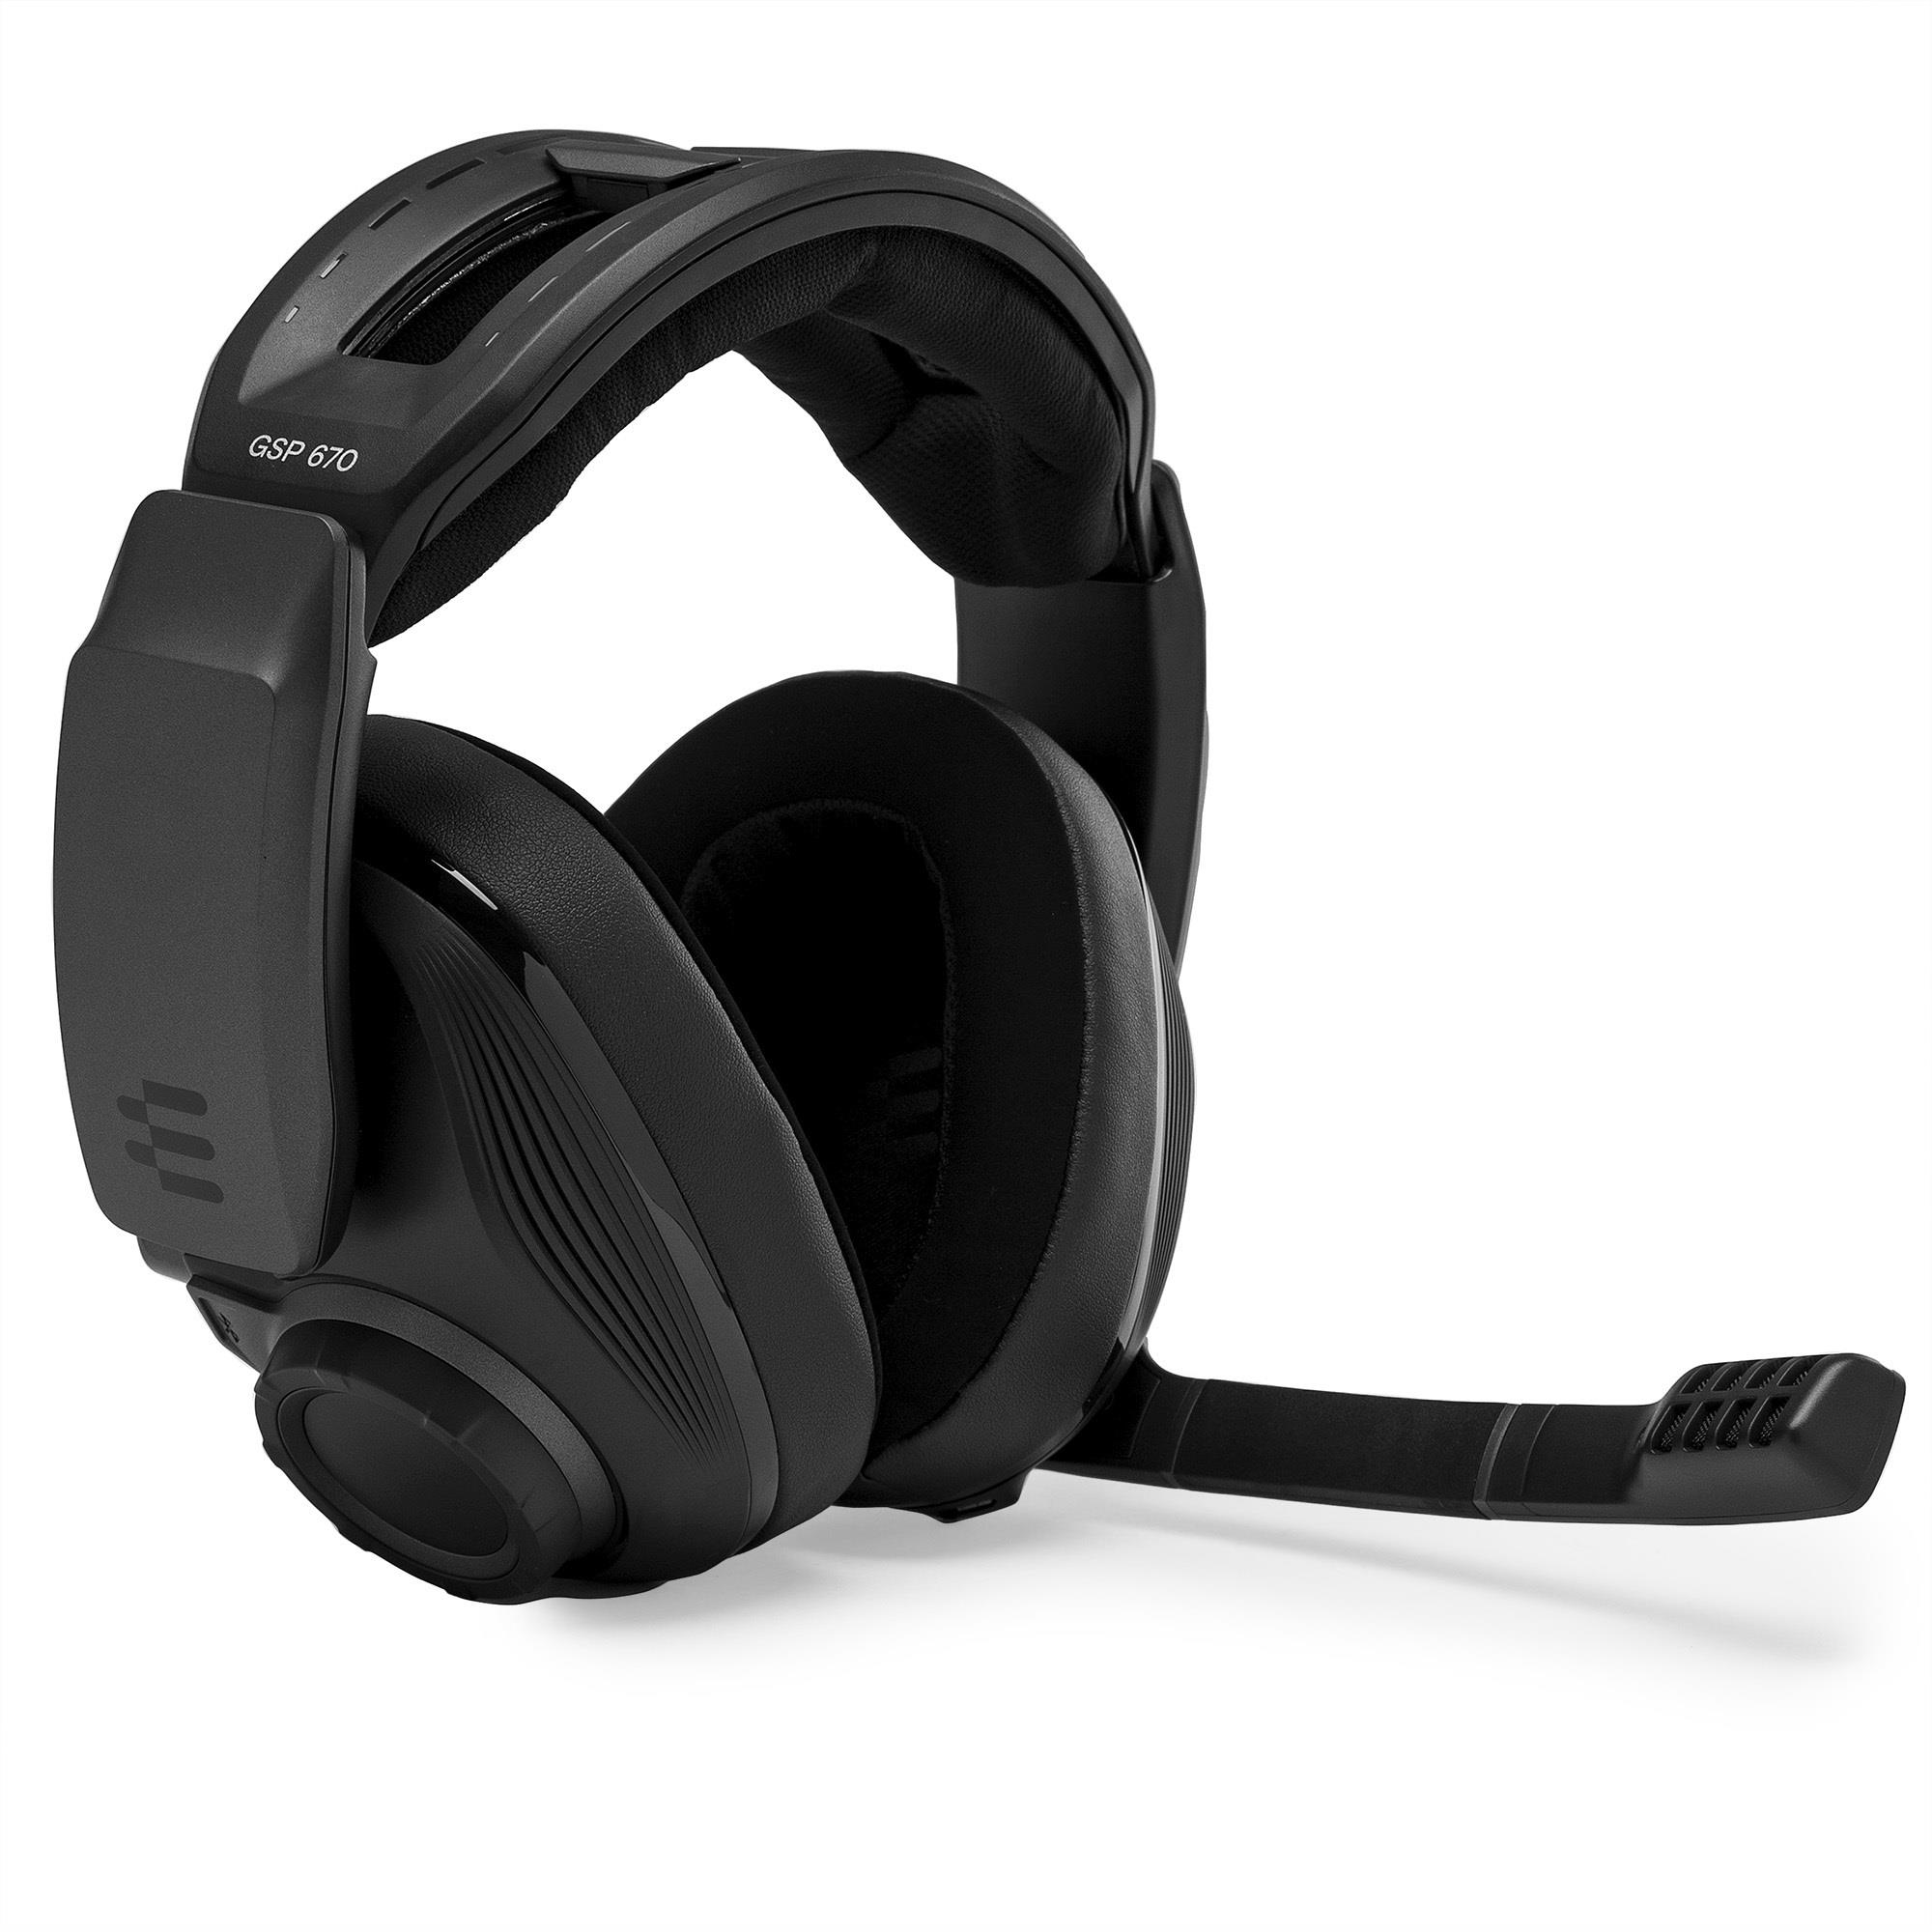 Rimpelingen Occlusie vooroordeel 1000233 Sennheiser GSP 670 Wireless 7.1 Premium Gaming Headset (Black)